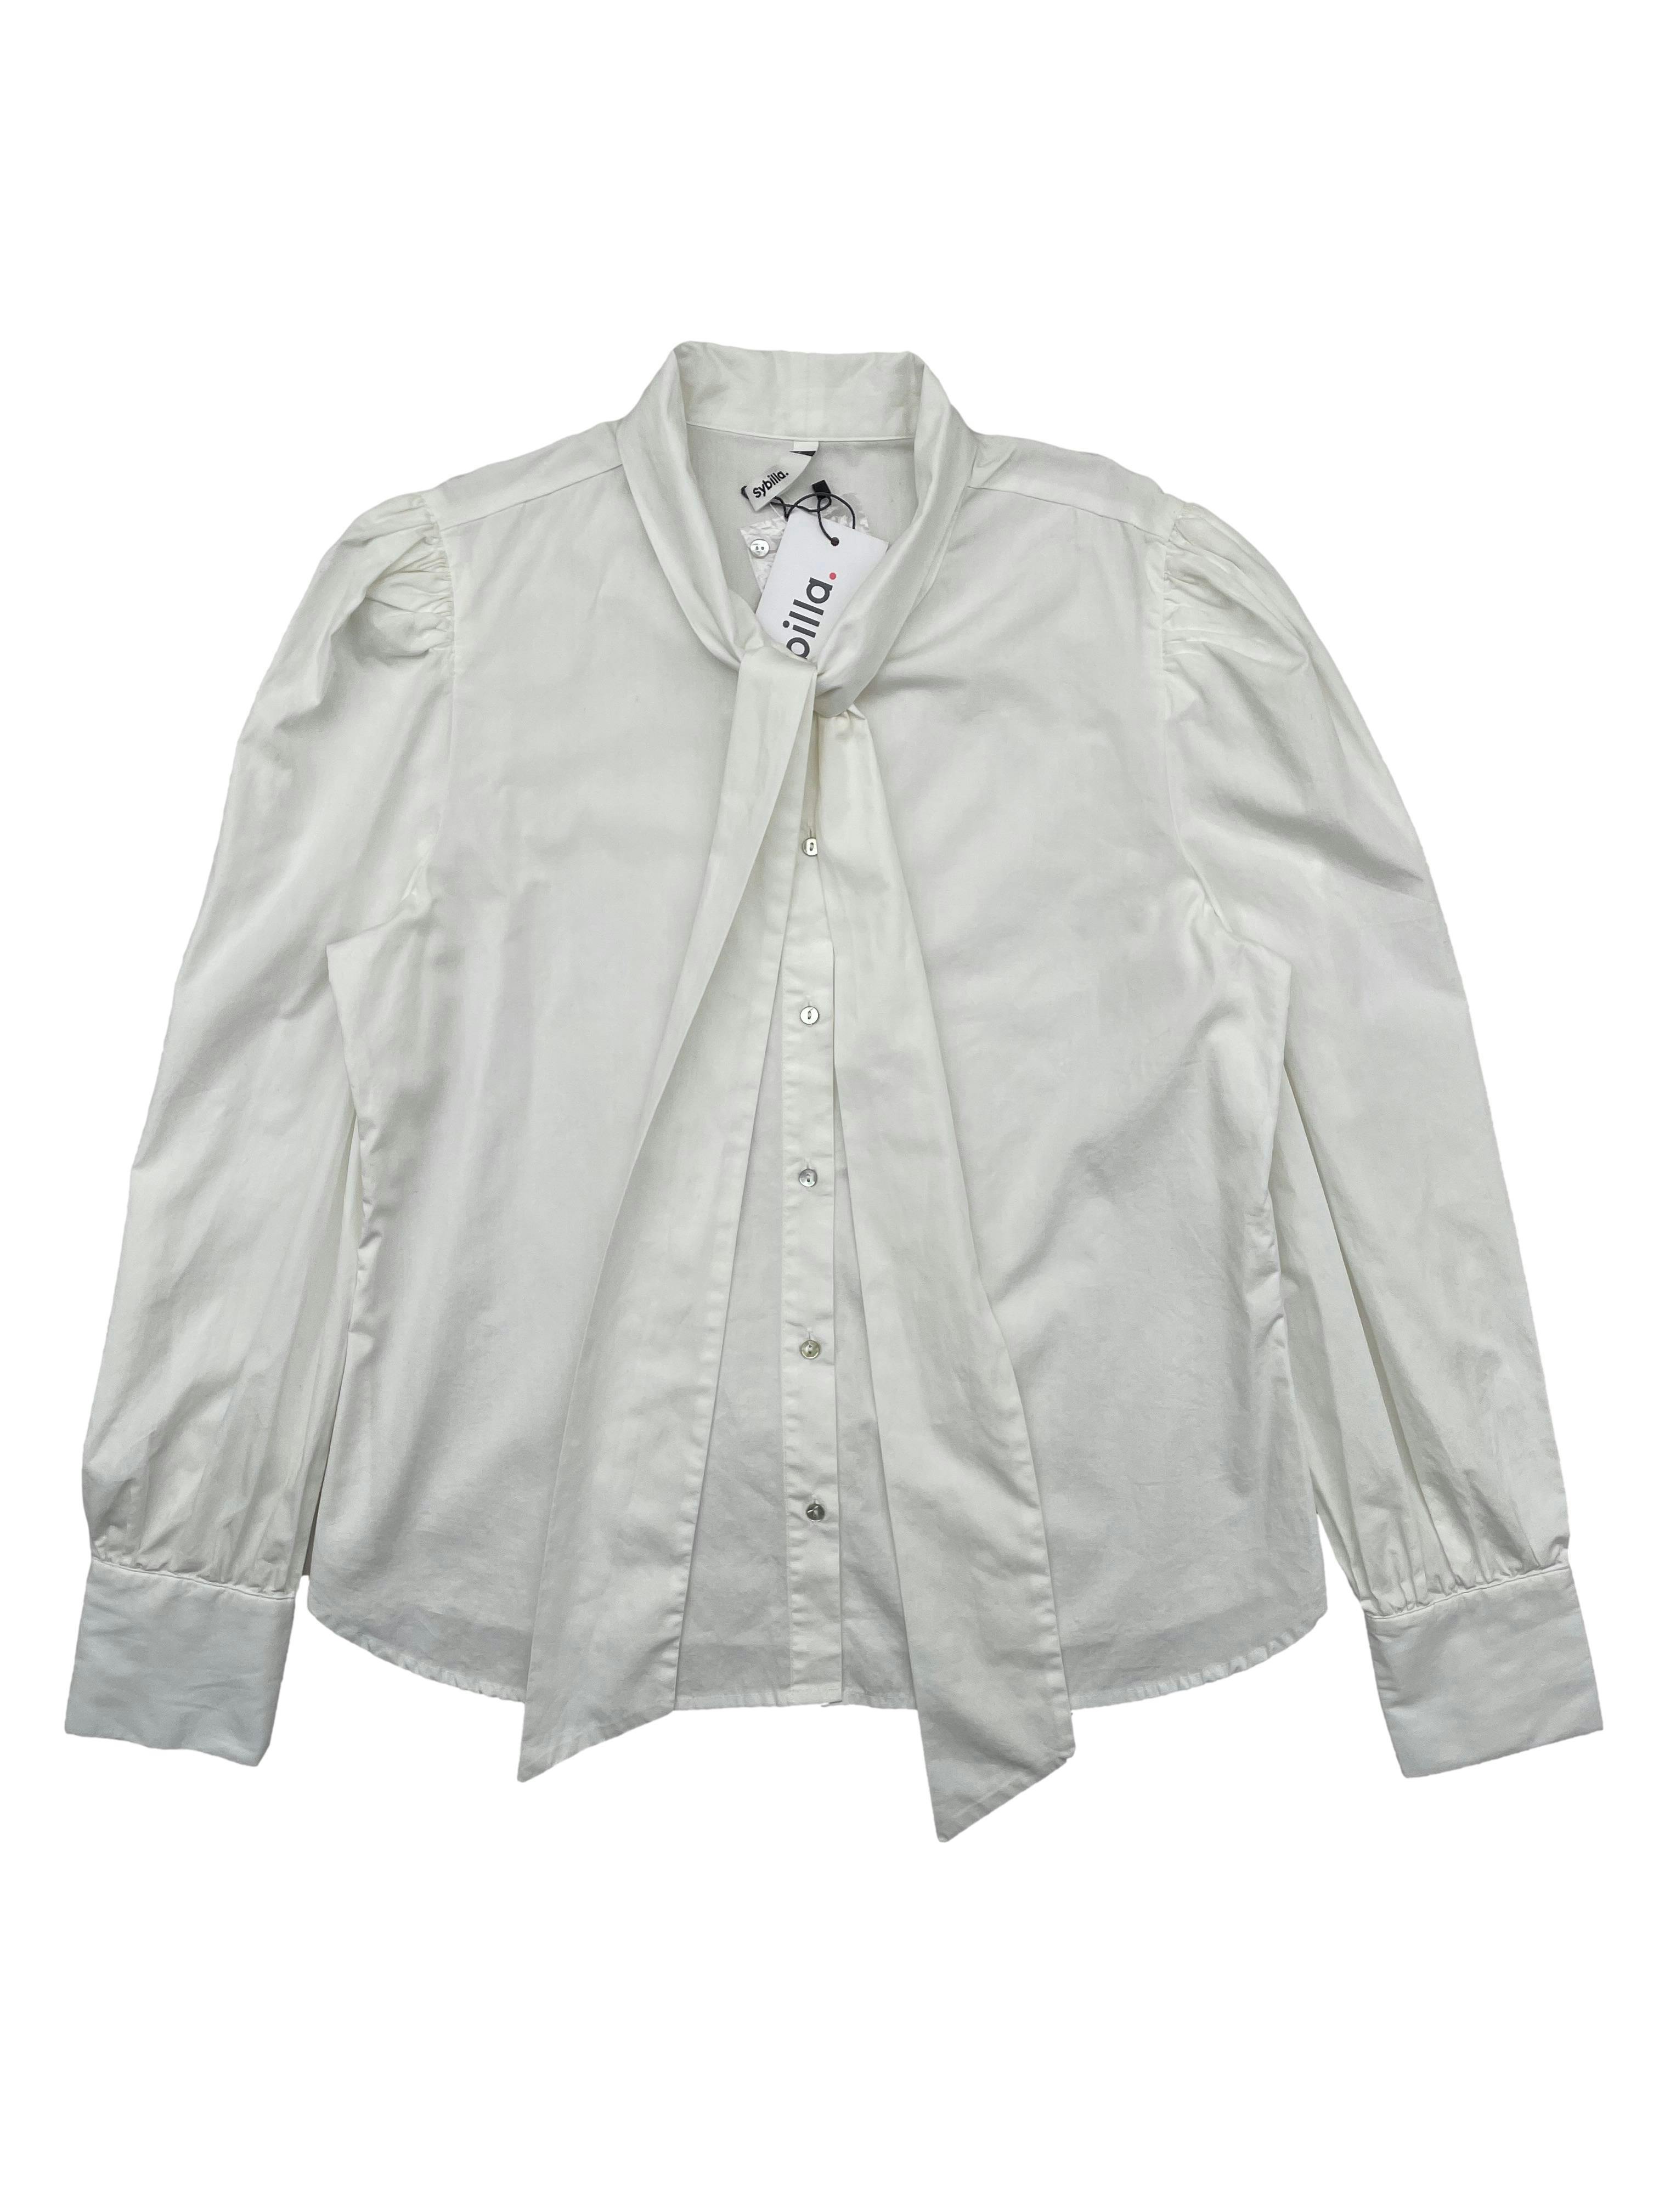 Blusa blanca Sybilla, corte recto, cintos en cuello, recogido en hombros y puños. Nueva con etiqueta. Busto 105cm, Largo 60cm.